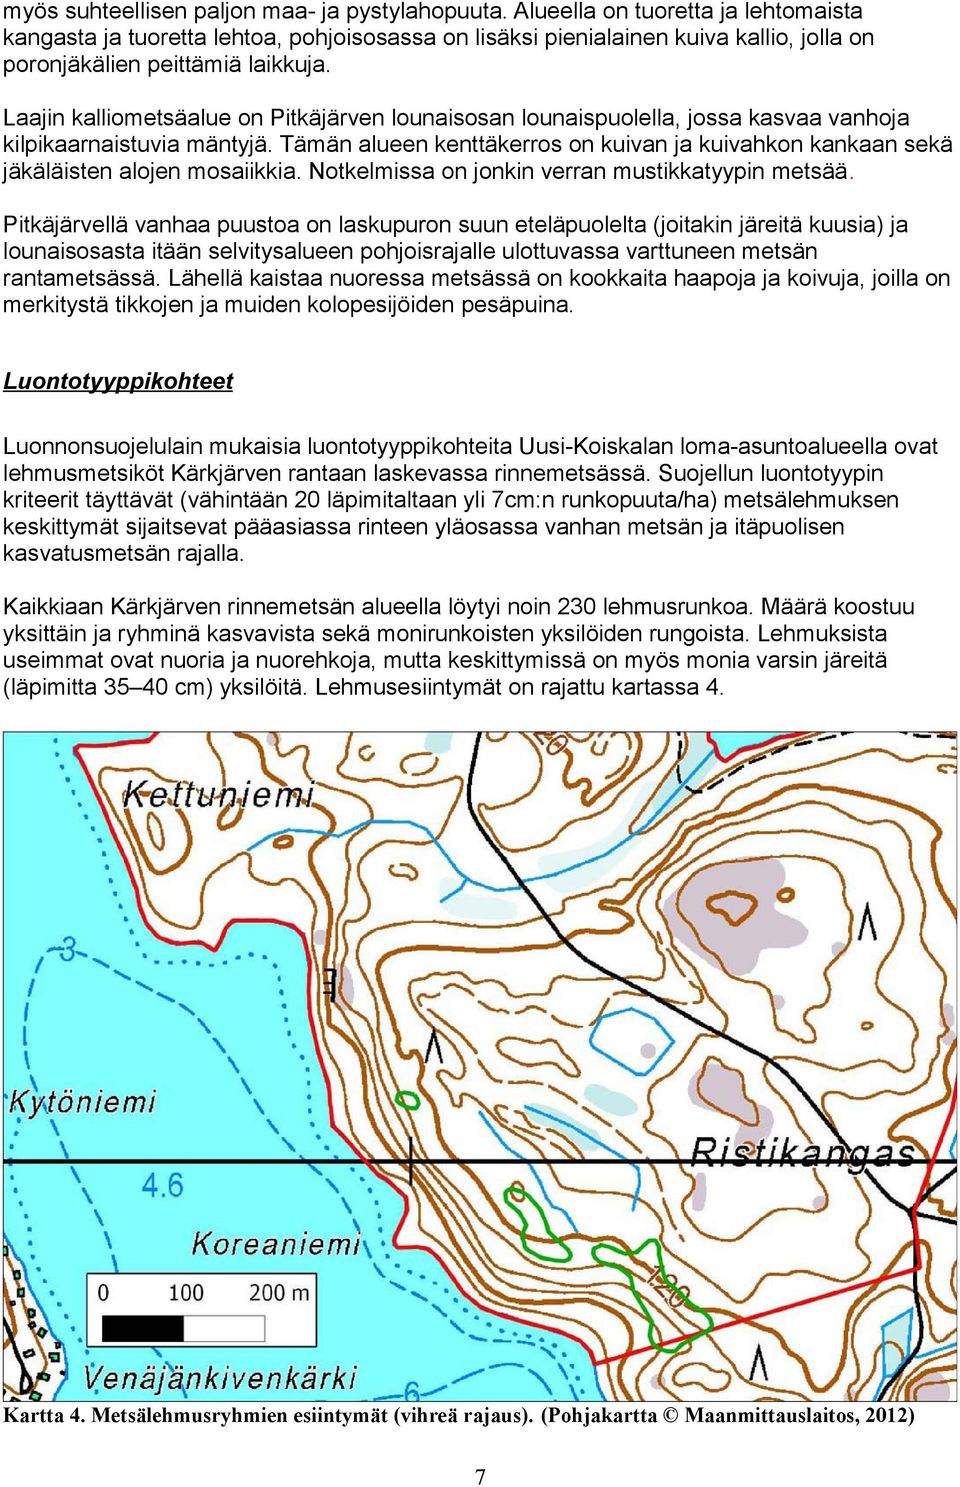 Laajin kalliometsäalue on Pitkäjärven lounaisosan lounaispuolella, jossa kasvaa vanhoja kilpikaarnaistuvia mäntyjä.